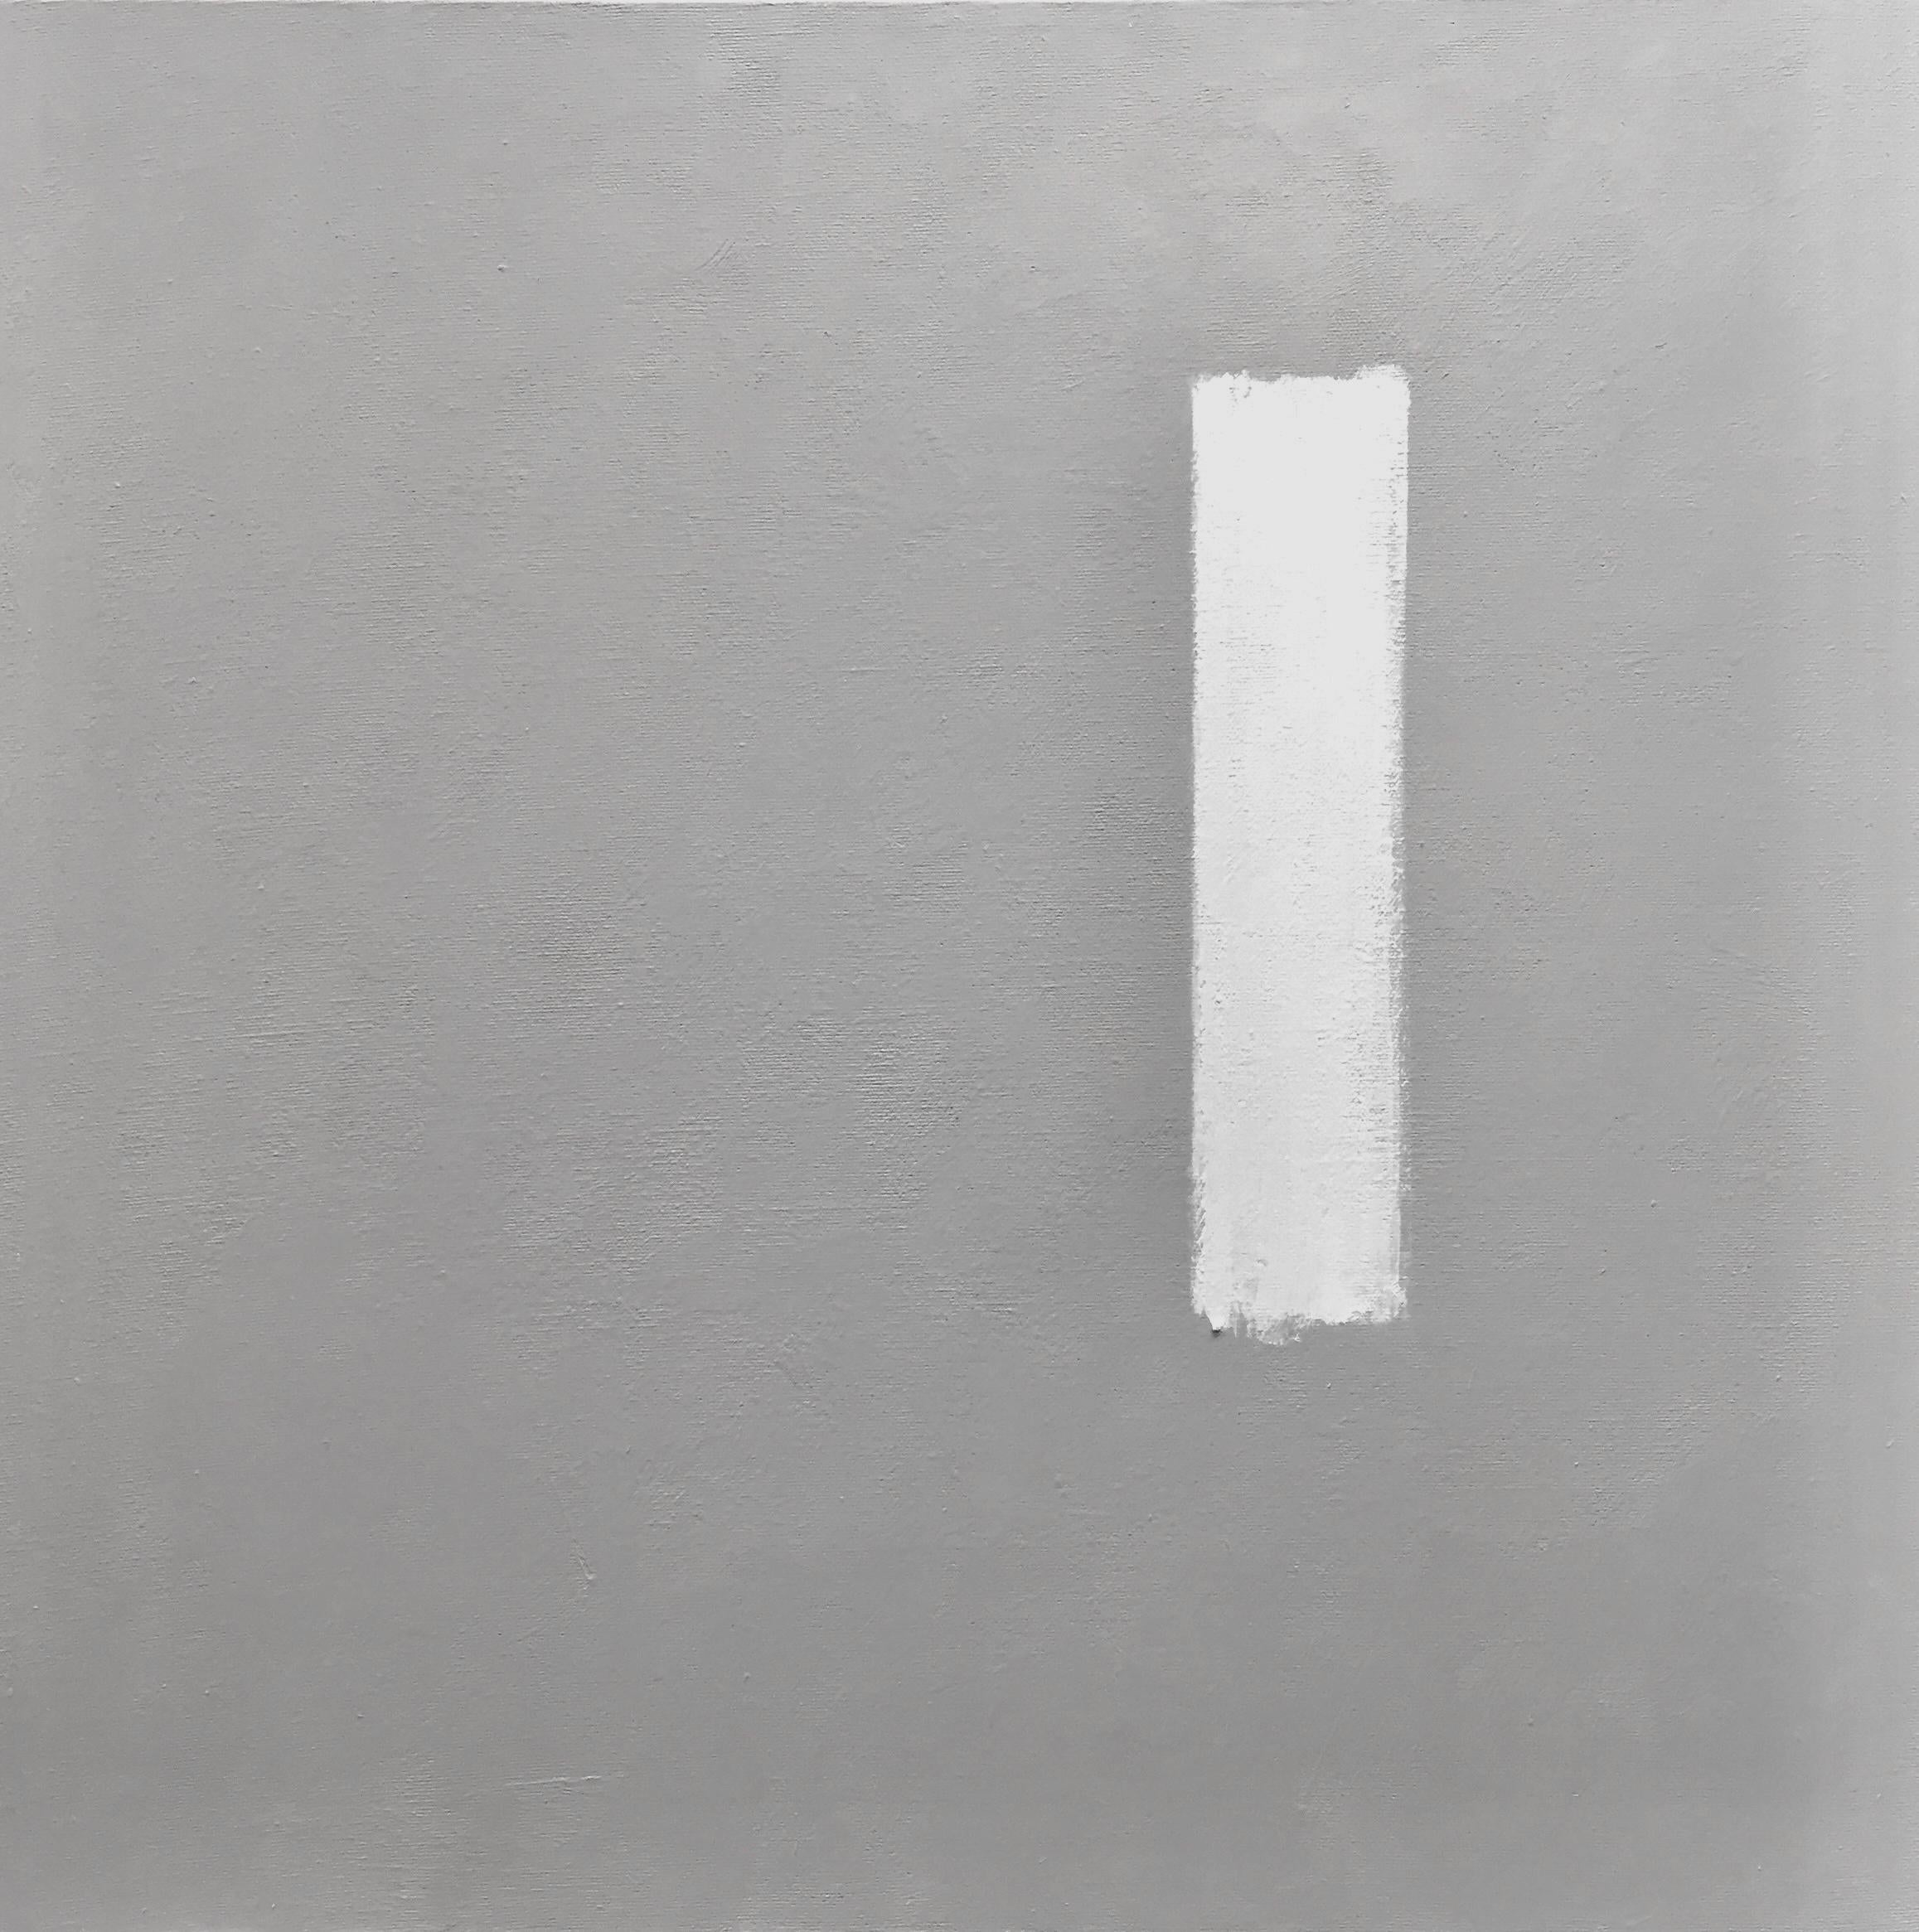 Finish Line - 20 Zoll x 20 Zoll, Grau, Weiß, Modern, Minimalistisches abstraktes Gemälde (Abstrakt), Art, von Andrea Stajan-Ferkul